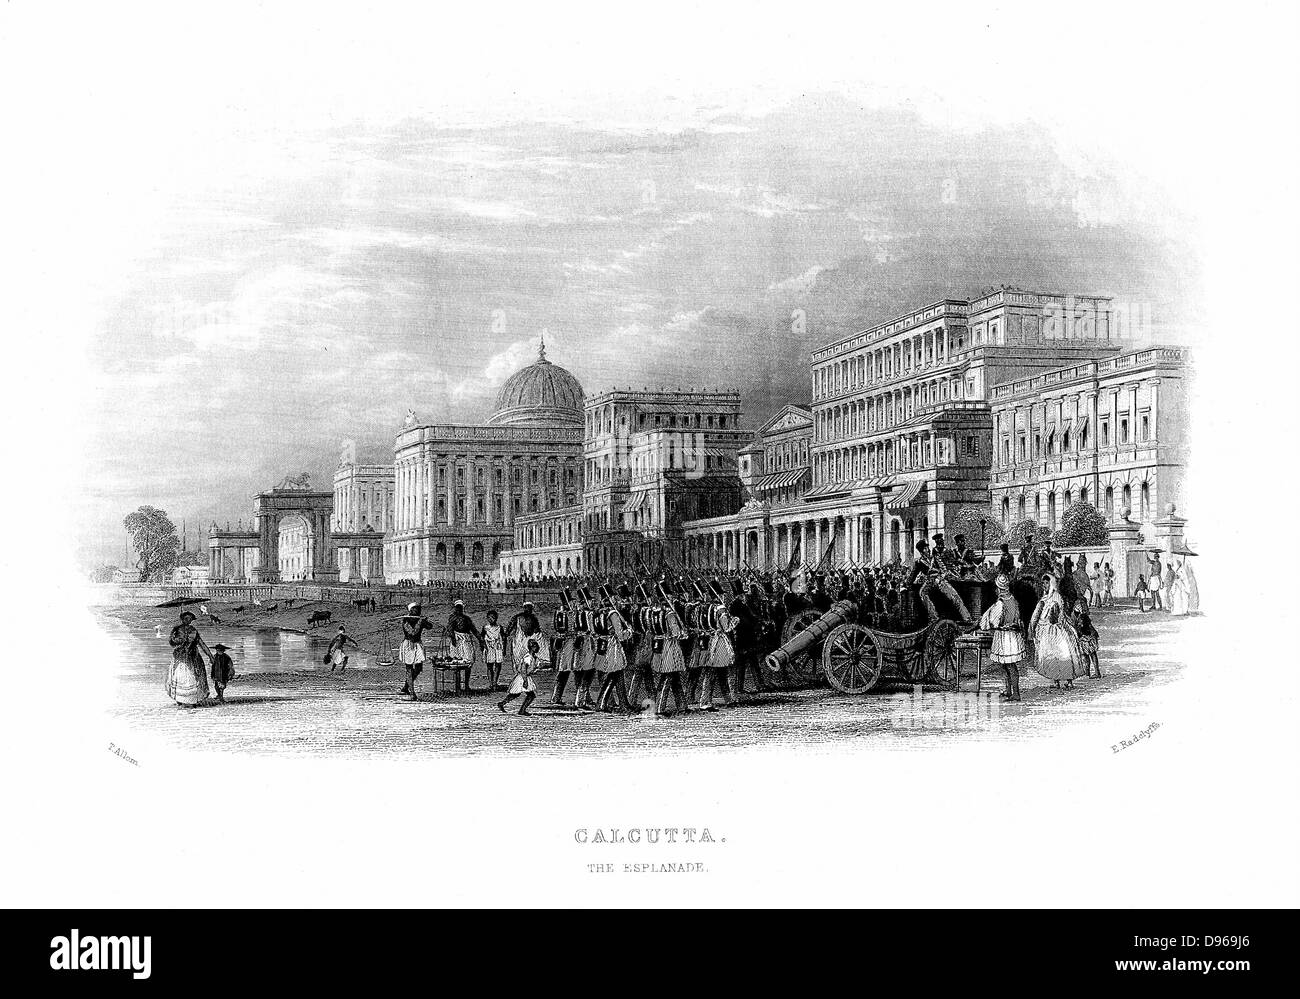 Les troupes britanniques défilant sur l'Esplanade, Calcutta, Inde. Milieu du 19e siècle gravure sur acier. Banque D'Images